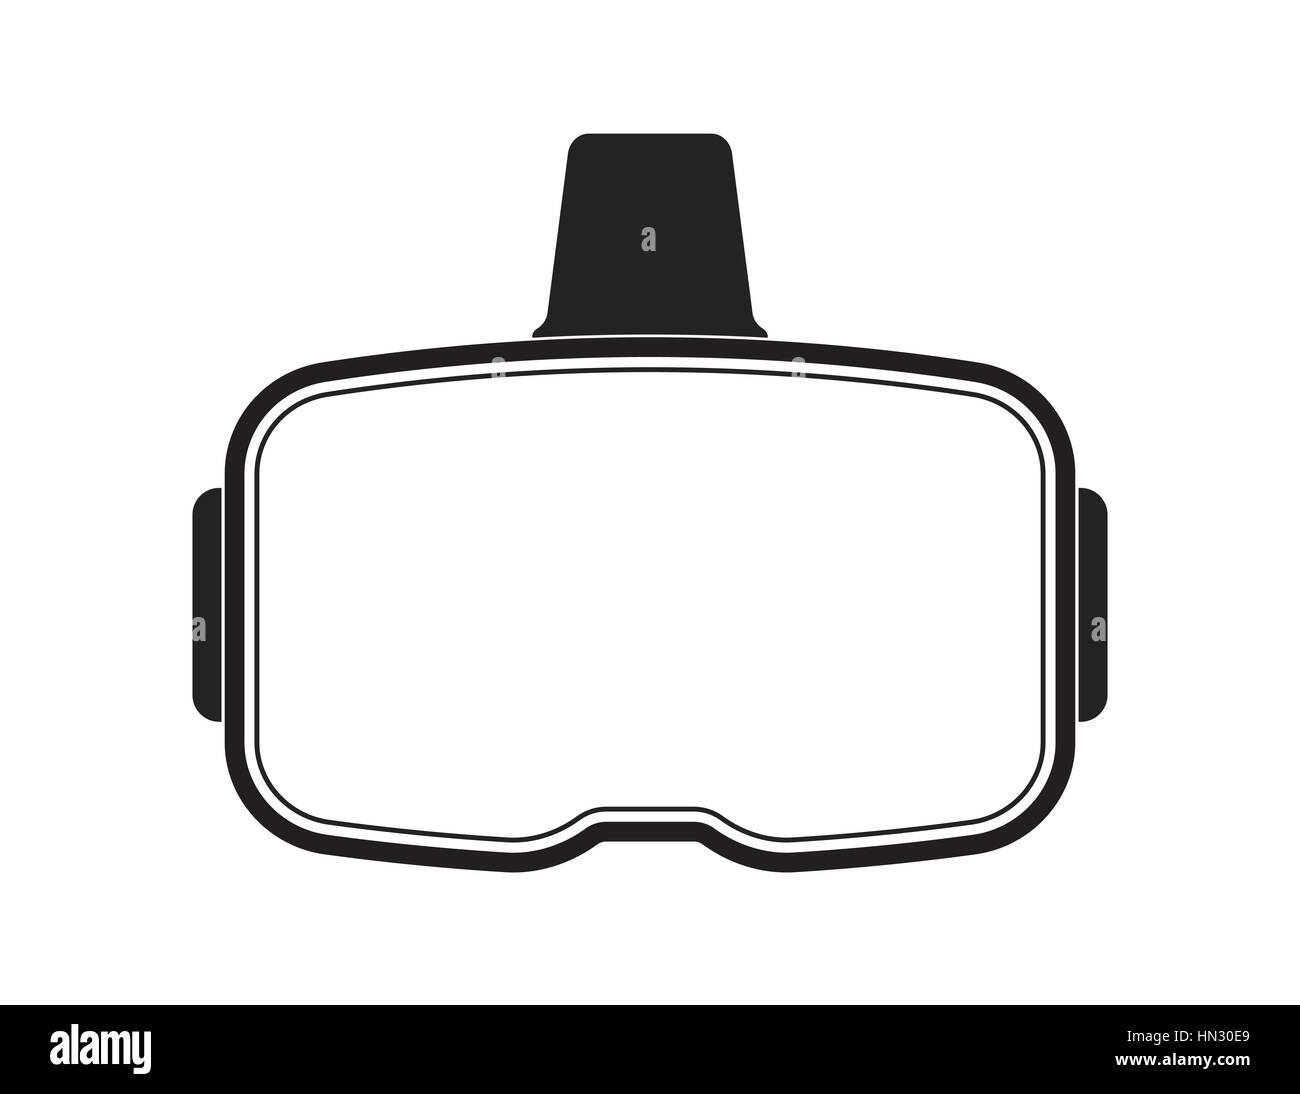 Oculus Rift-wie VR Kopfhörer mit leeren Visier für benutzerdefinierte Änderungen Stockfoto